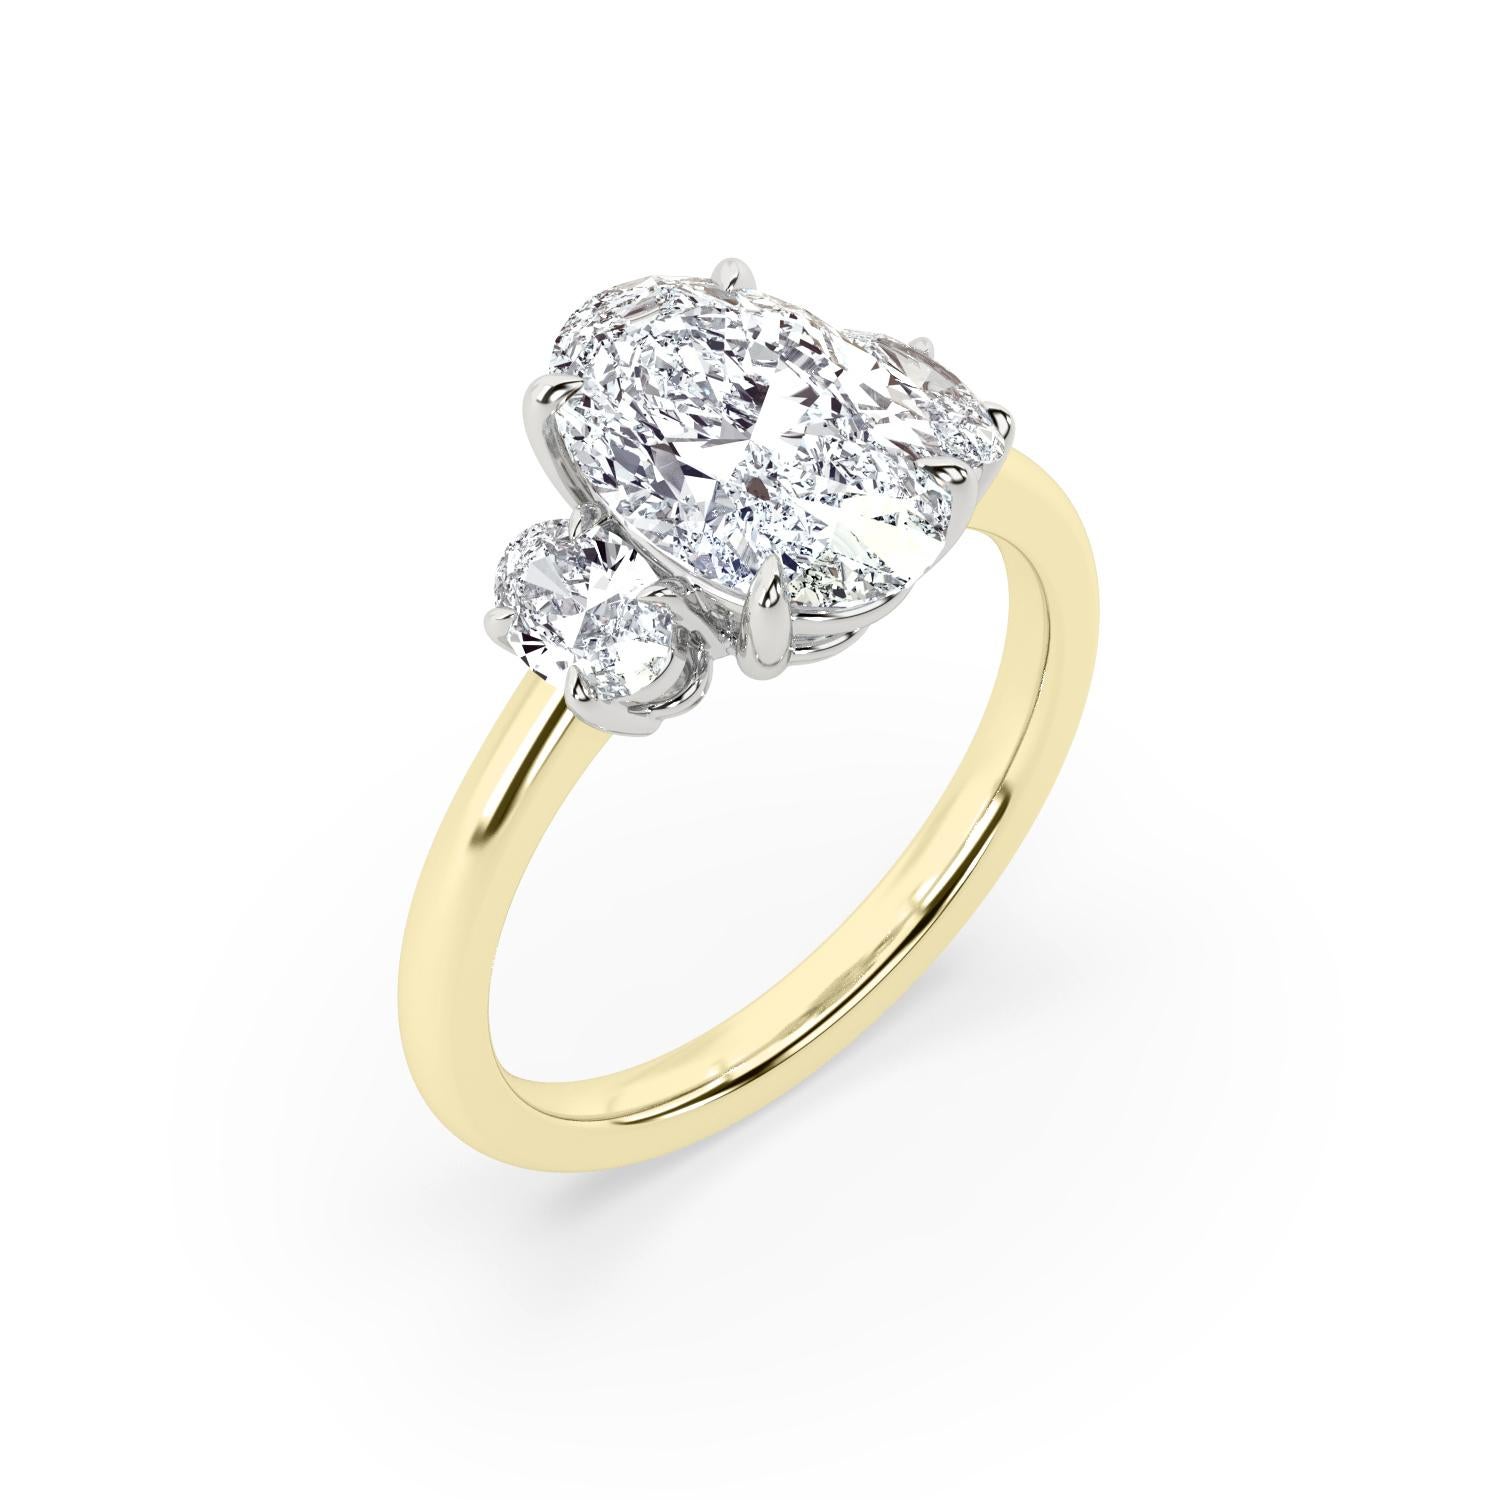 bague de fiançailles en diamant ovale brillant de 2 carats certifié par le GIA. Le diamant est de couleur G et de pureté VS2. Le diamant central est flanqué de deux ovales plus petits (4x3mm) de qualité assortie. La monture est fabriquée à la main